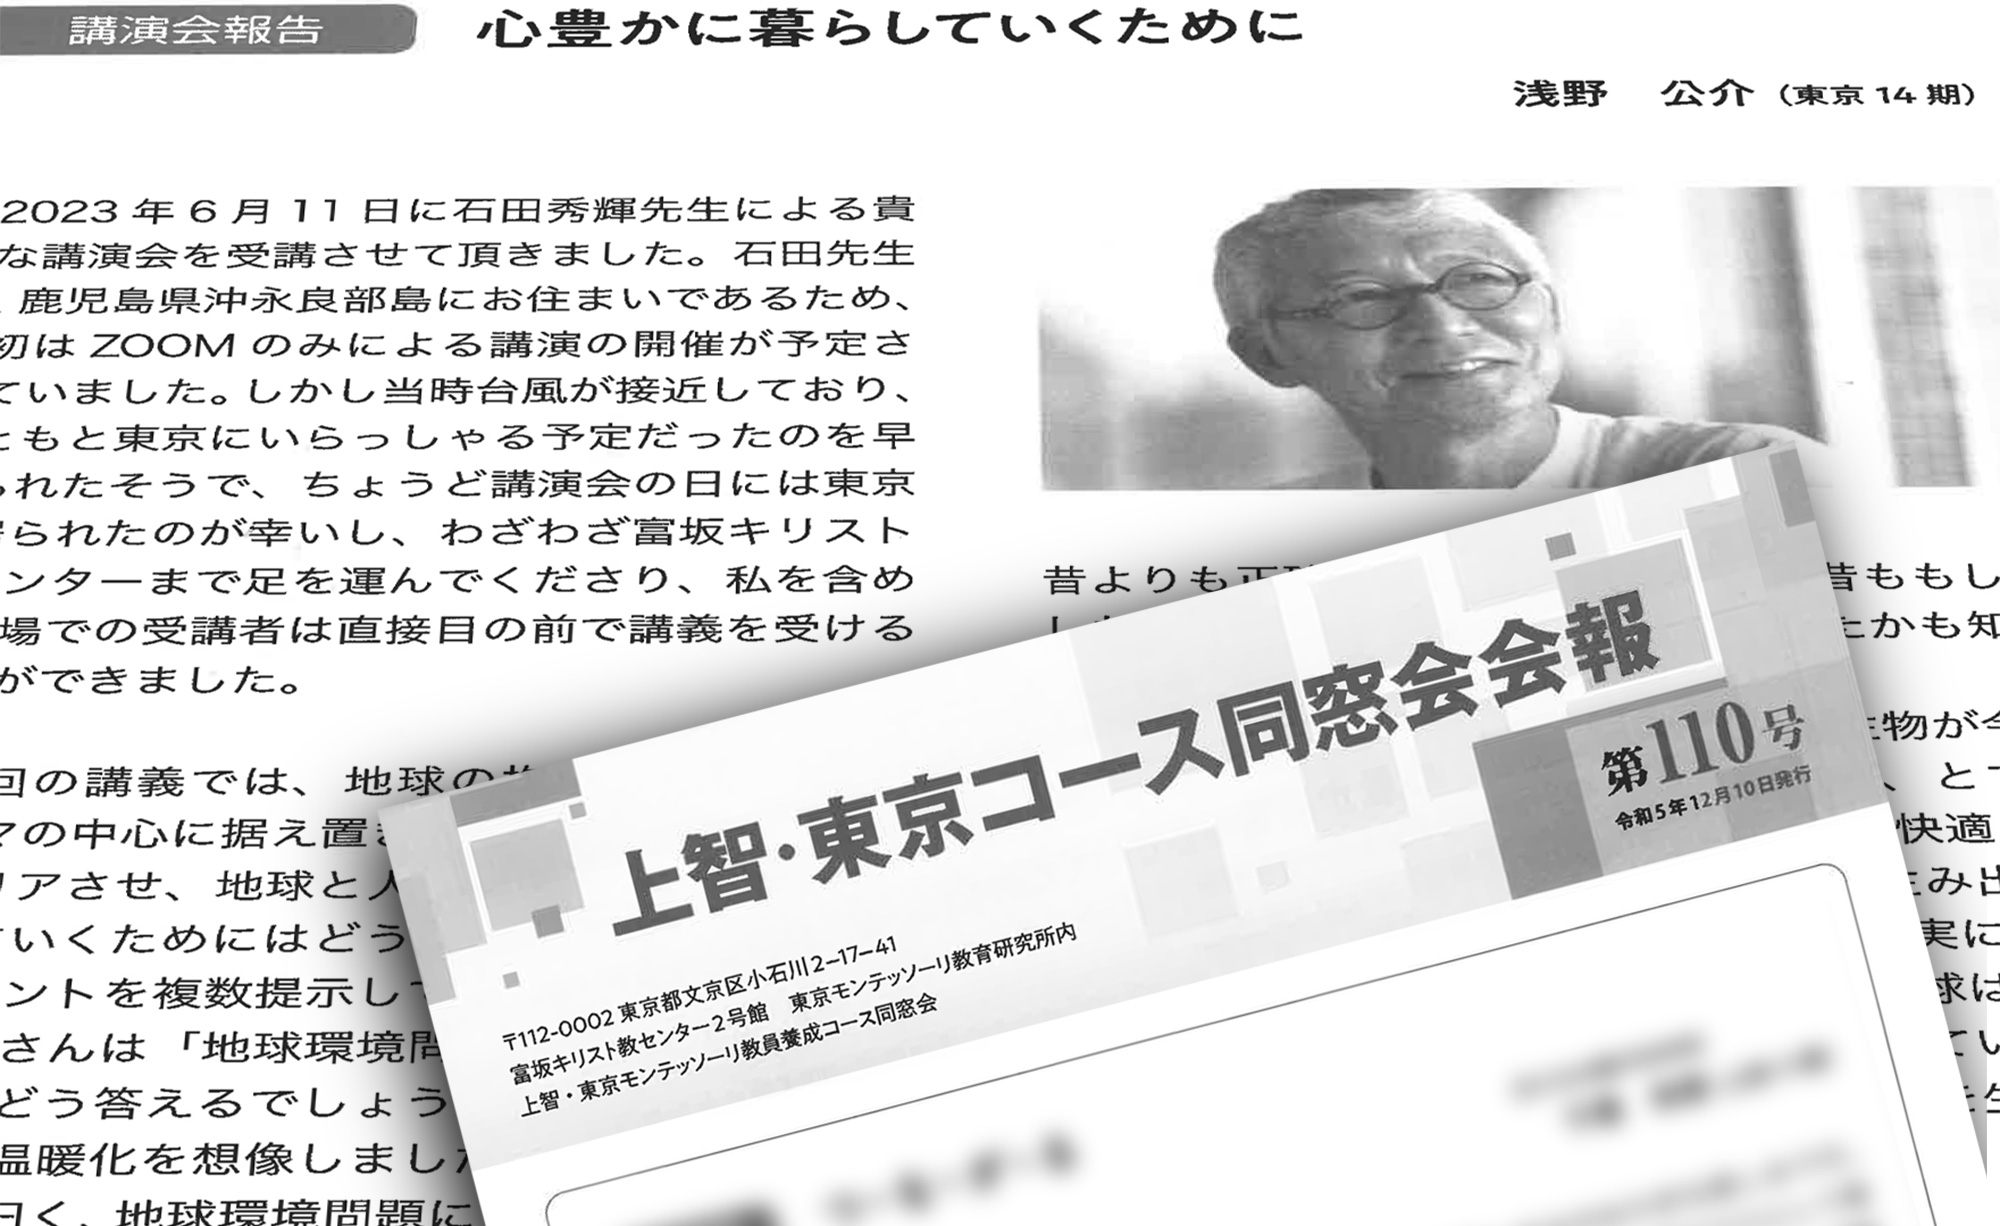 【メディア情報】東京モンテッソーリ教育研究所の同窓会会報に弊社Frontierkids Ichigaya浅野先生のレポートが掲載されました